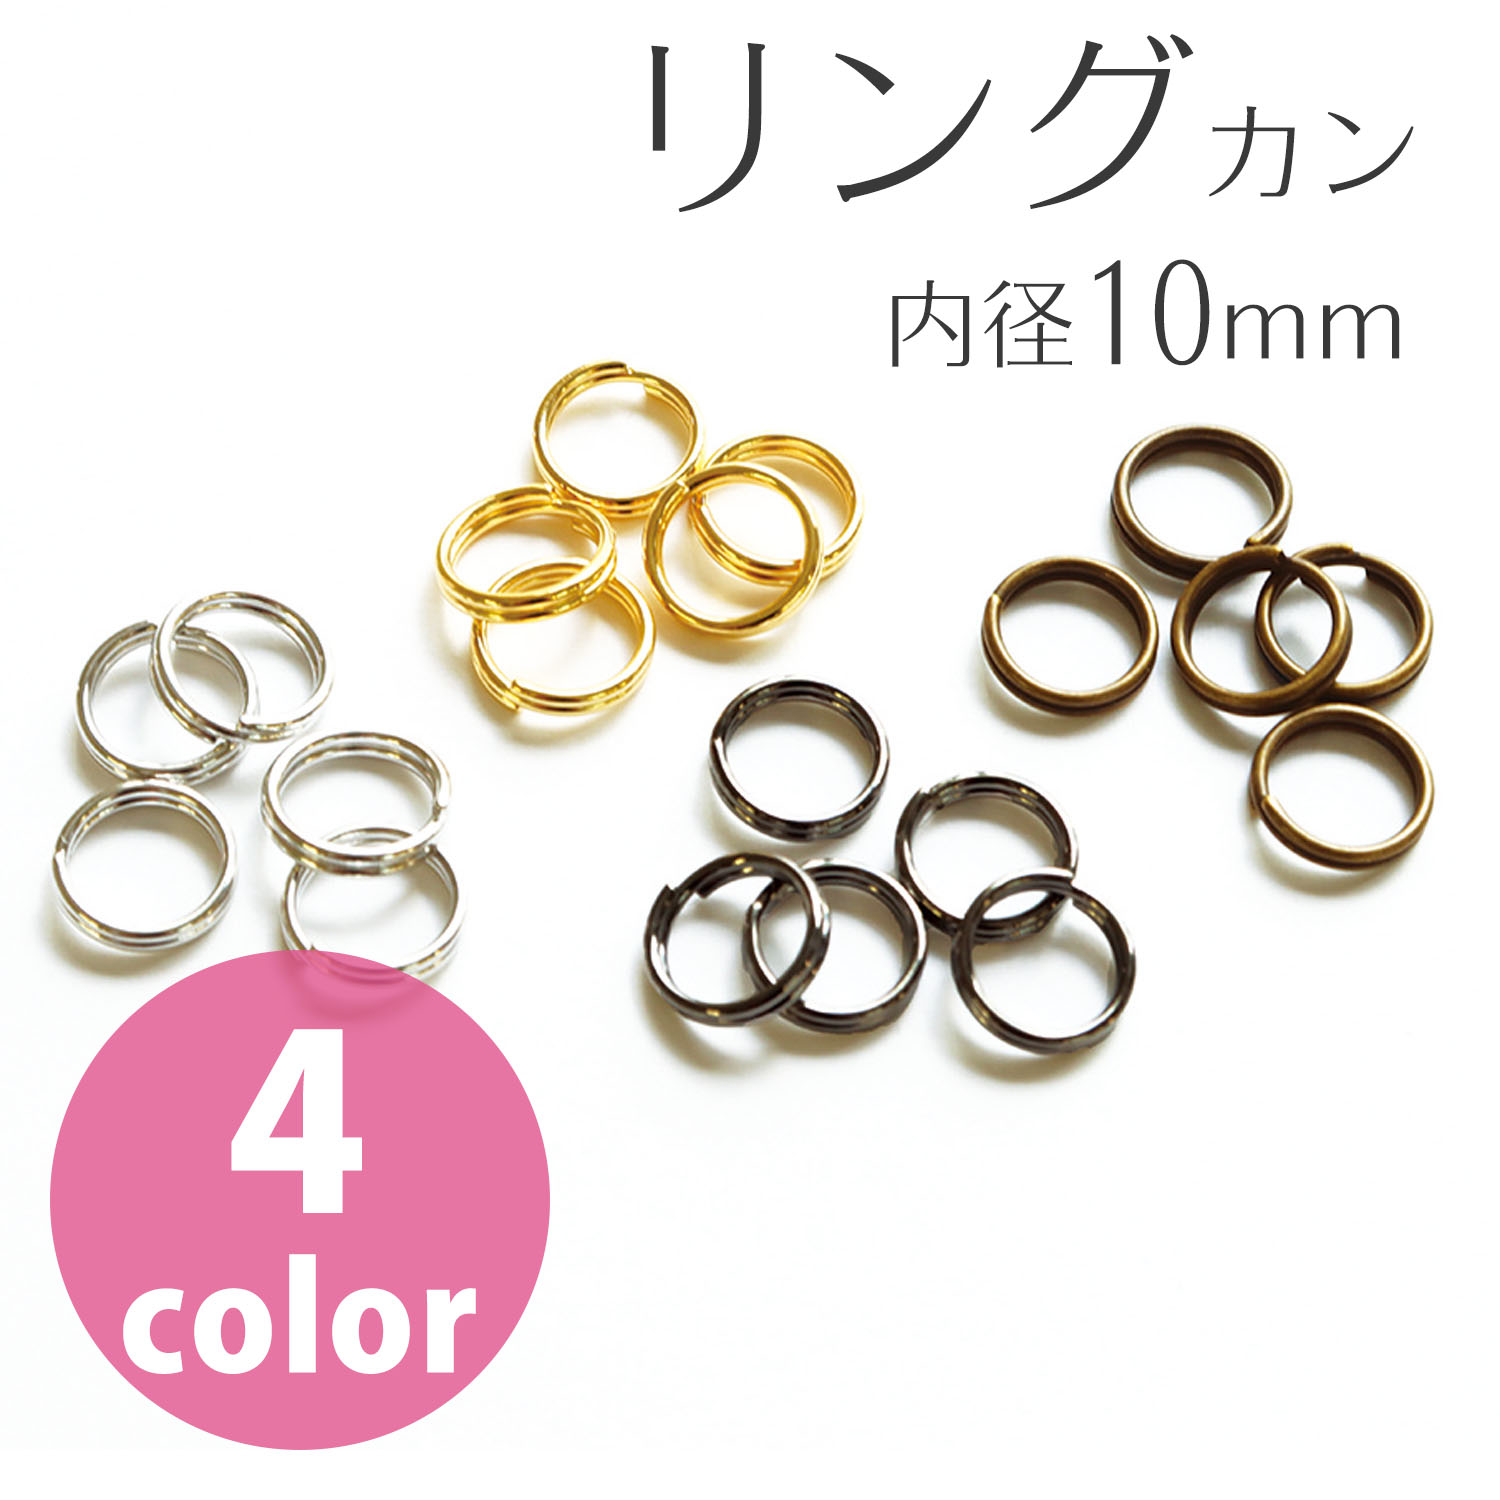 MK311　 Split Rings, Inner diameter 10mm , 100pcs/pack　(pack)